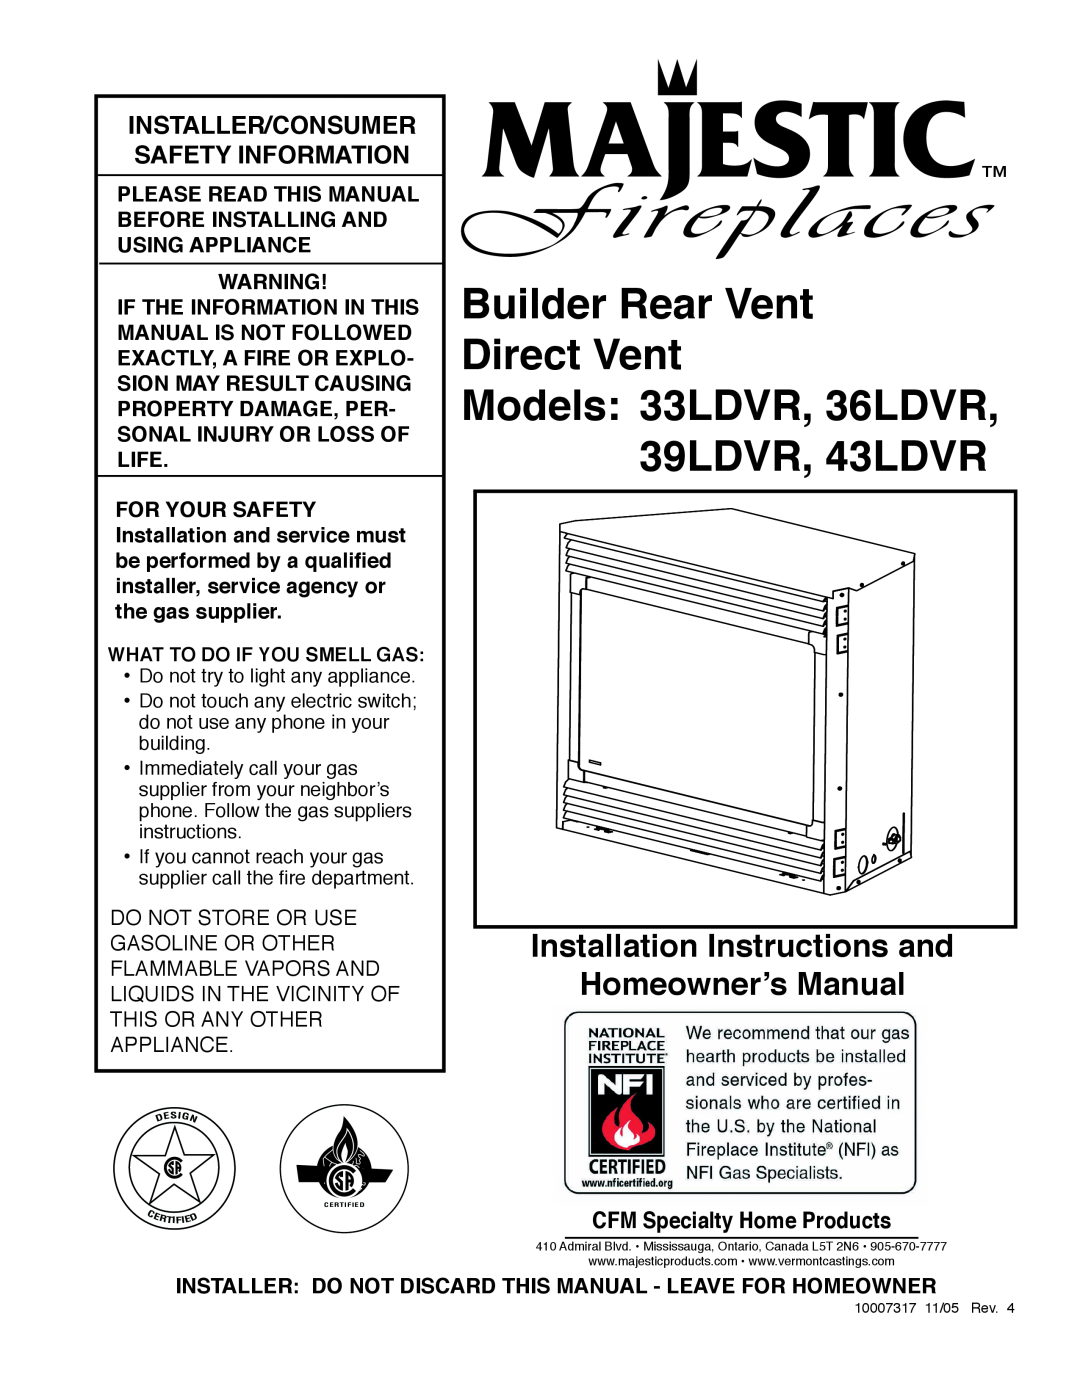 Majestic Appliances installation instructions Builder Rear Vent Direct Vent, Models 33LDVR, 36LDVR, 39LDVR, 43LDVR 